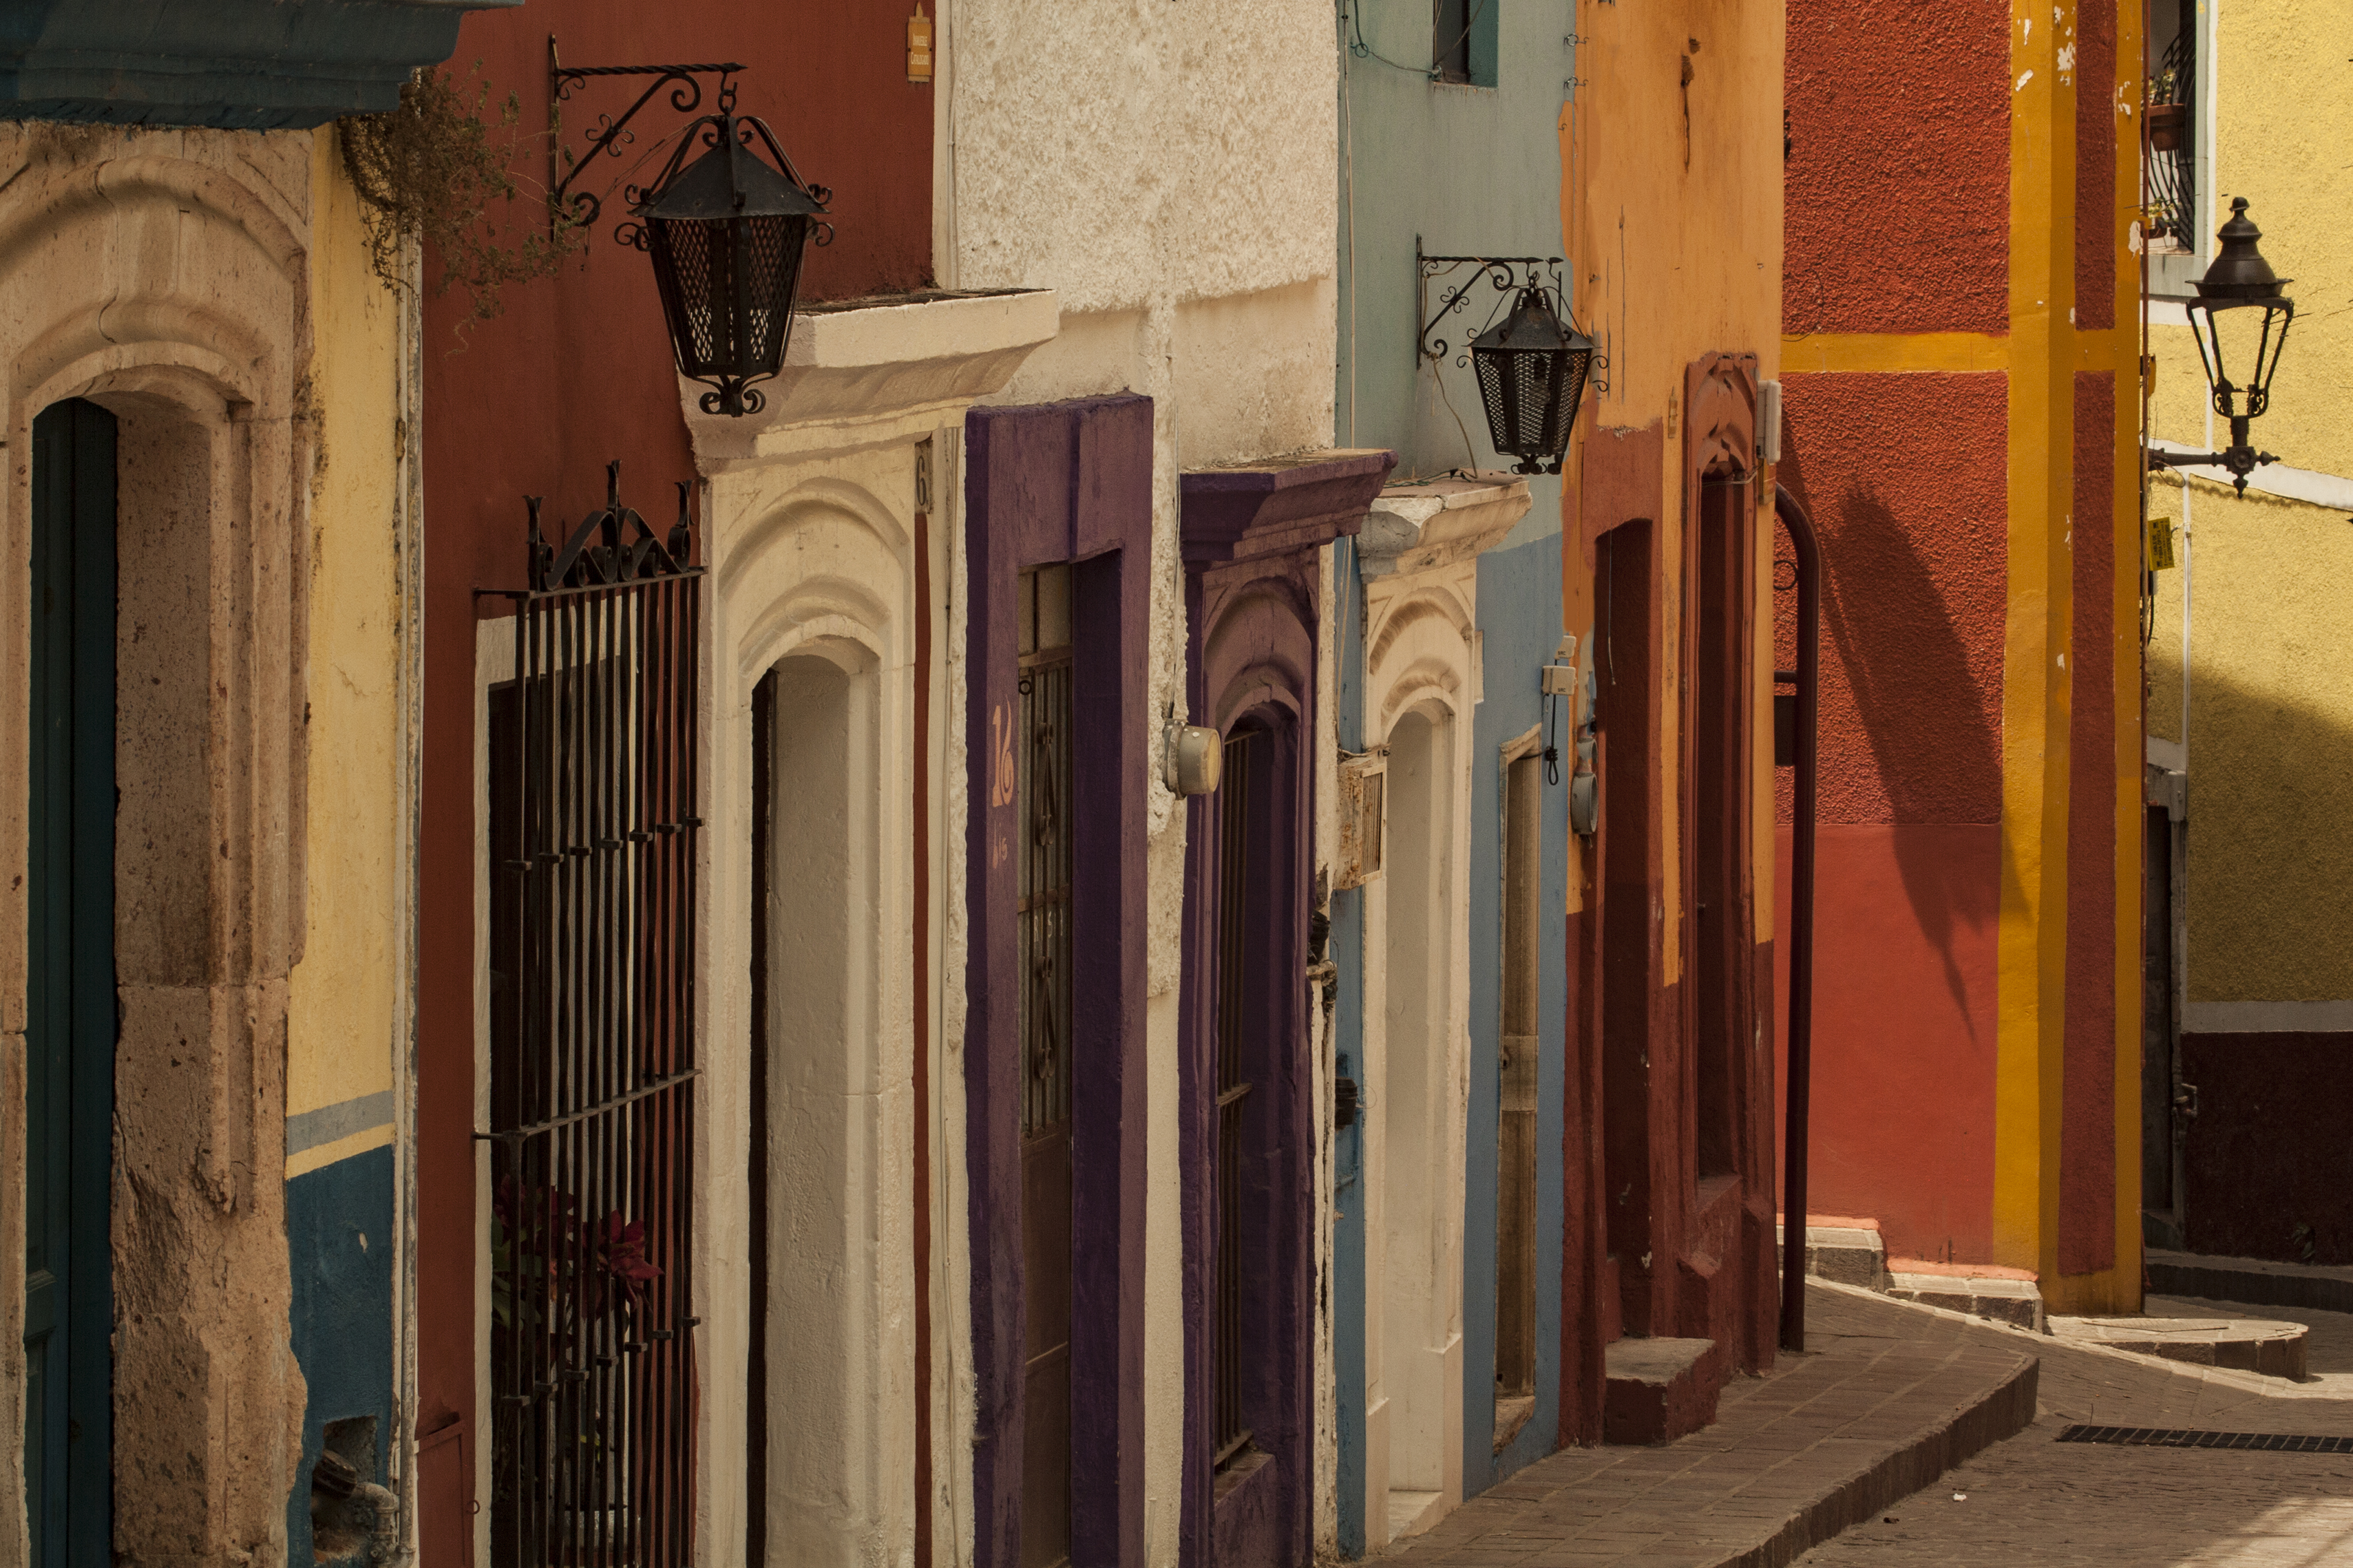 La subida al callejón Guanajuato, Guanajuato, México